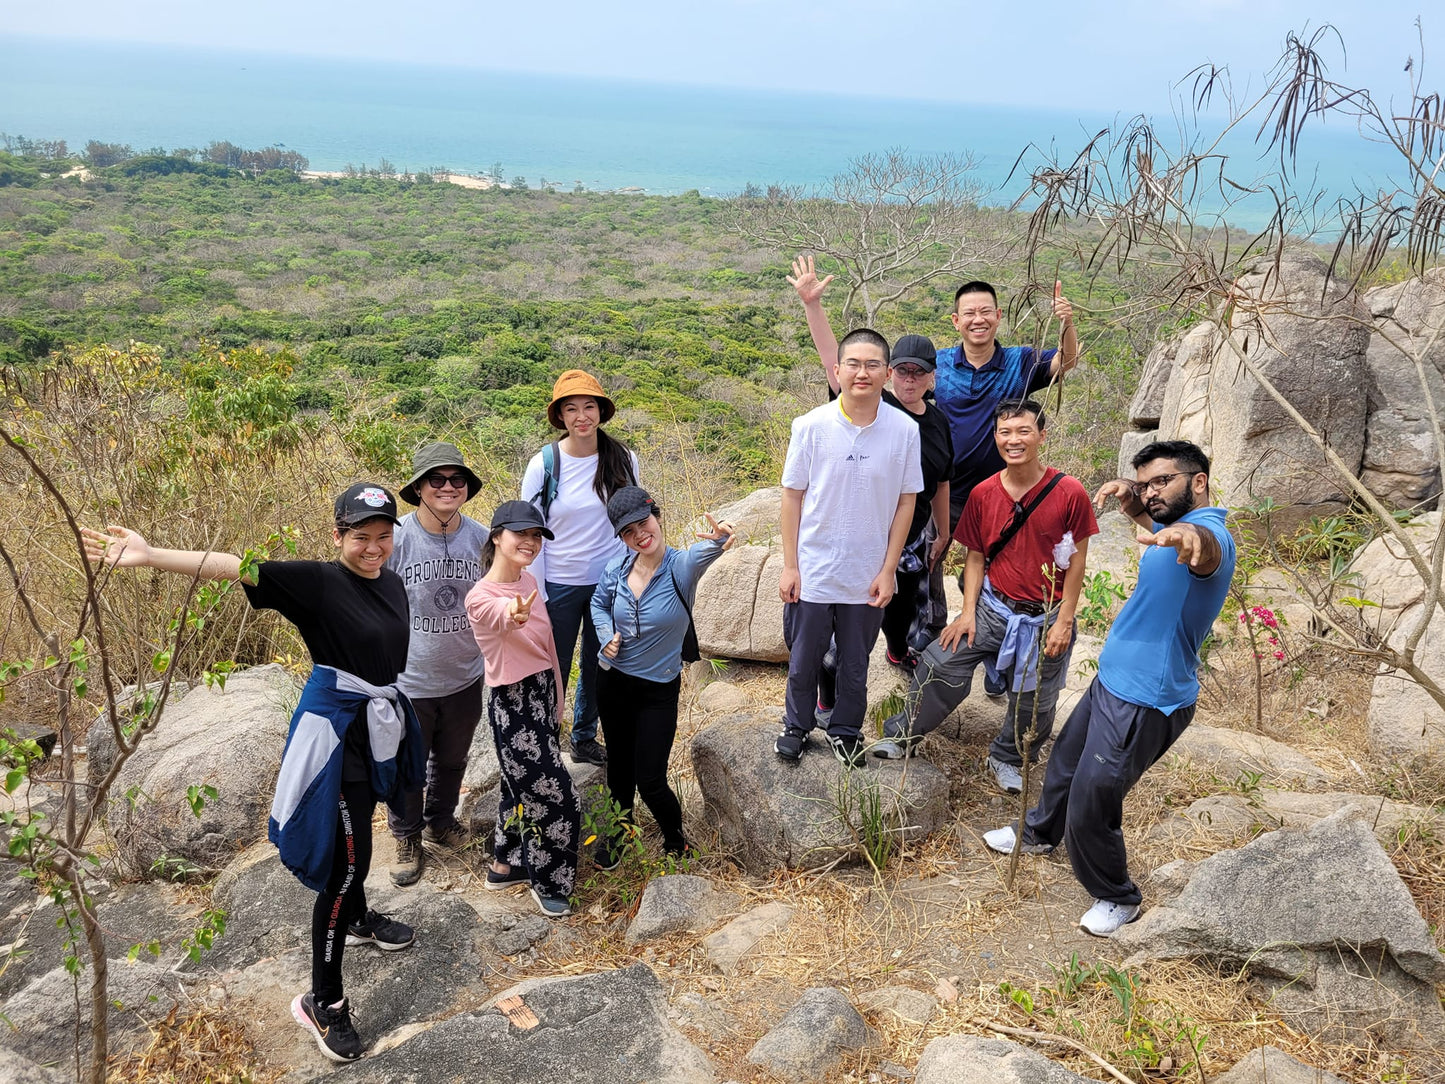 (기본 투어) 14AB: Phuoc Buu 정글(자연 보호 구역): Binh Chau의 길들여지지 않은 아름다움을 발견하는 해안 개척자